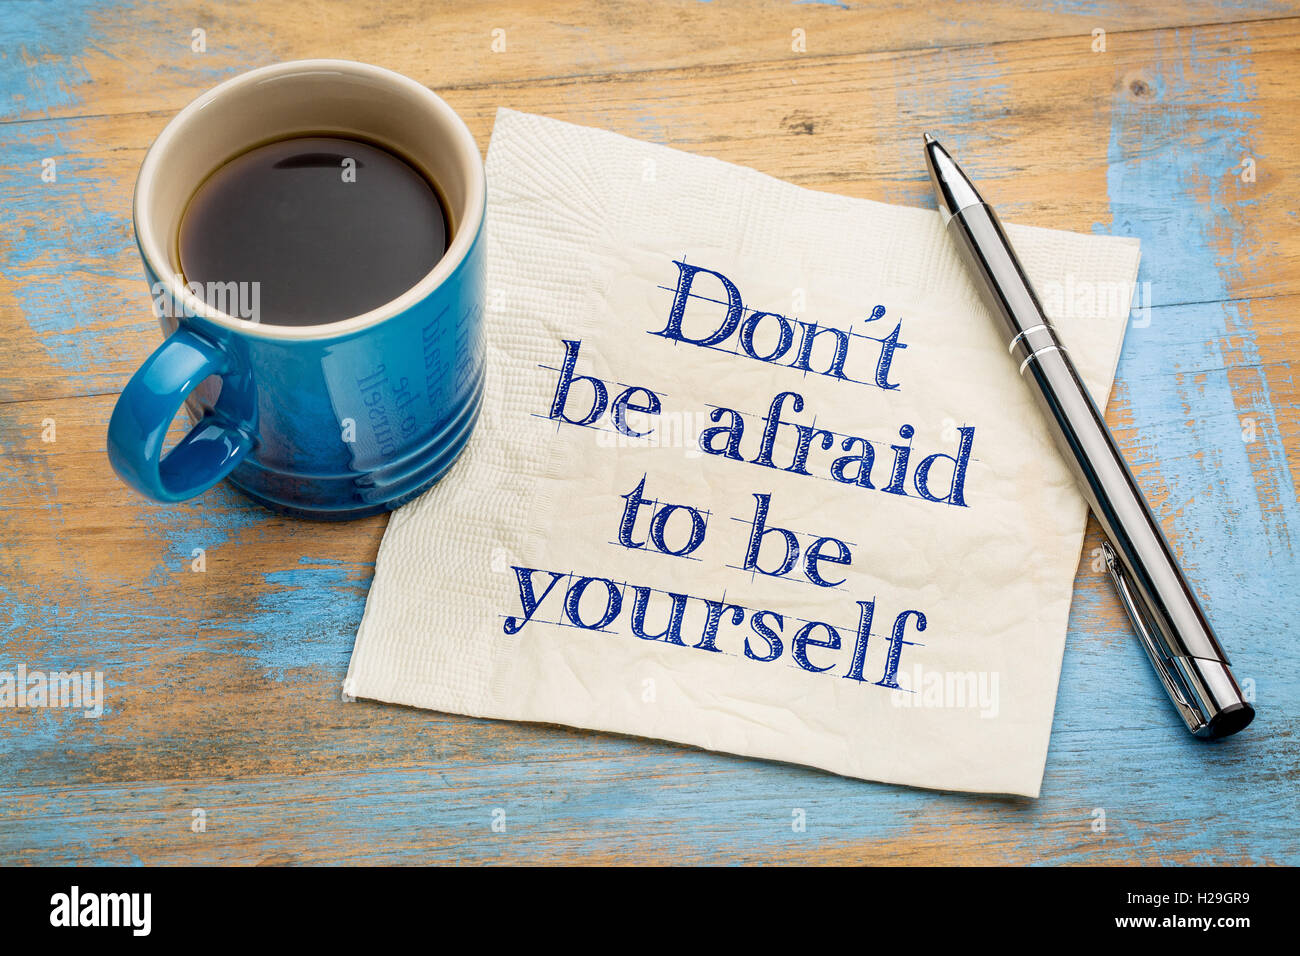 Non abbiate paura di essere voi stessi - scrittura su un tovagliolo con una tazza di caffè espresso Foto Stock